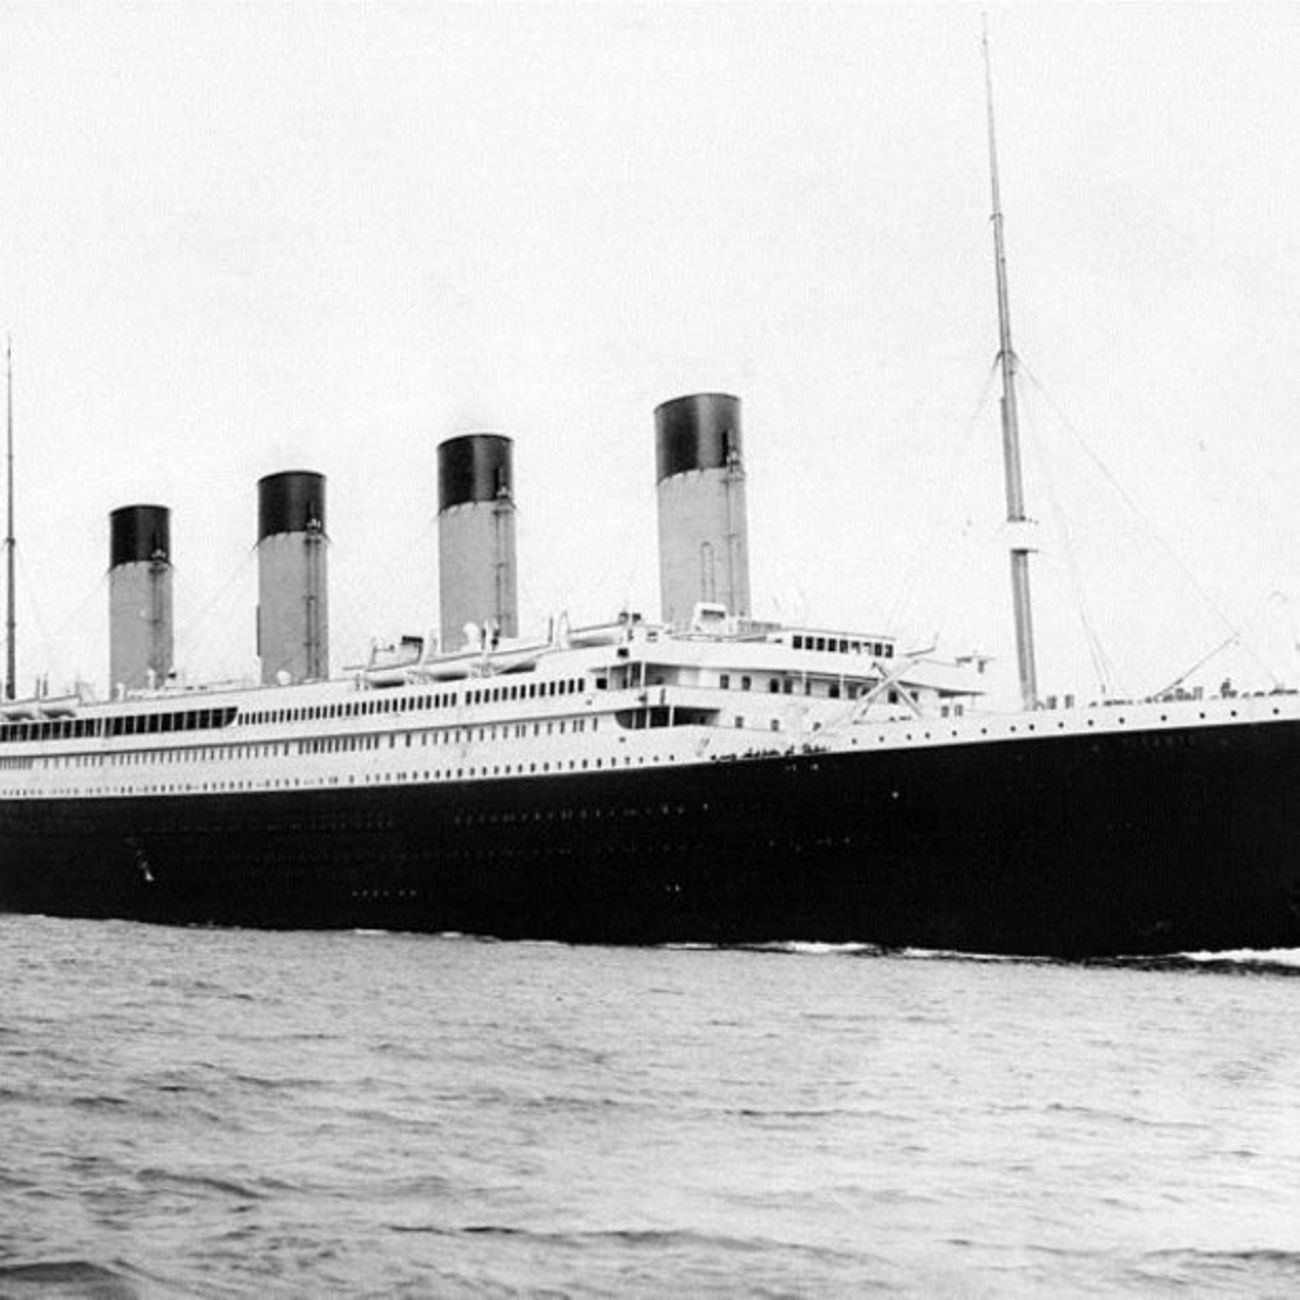 El Titanic II zarpará en 2027: "Hay dos millones de personas interesadas en viajar en él" (Europa Press)